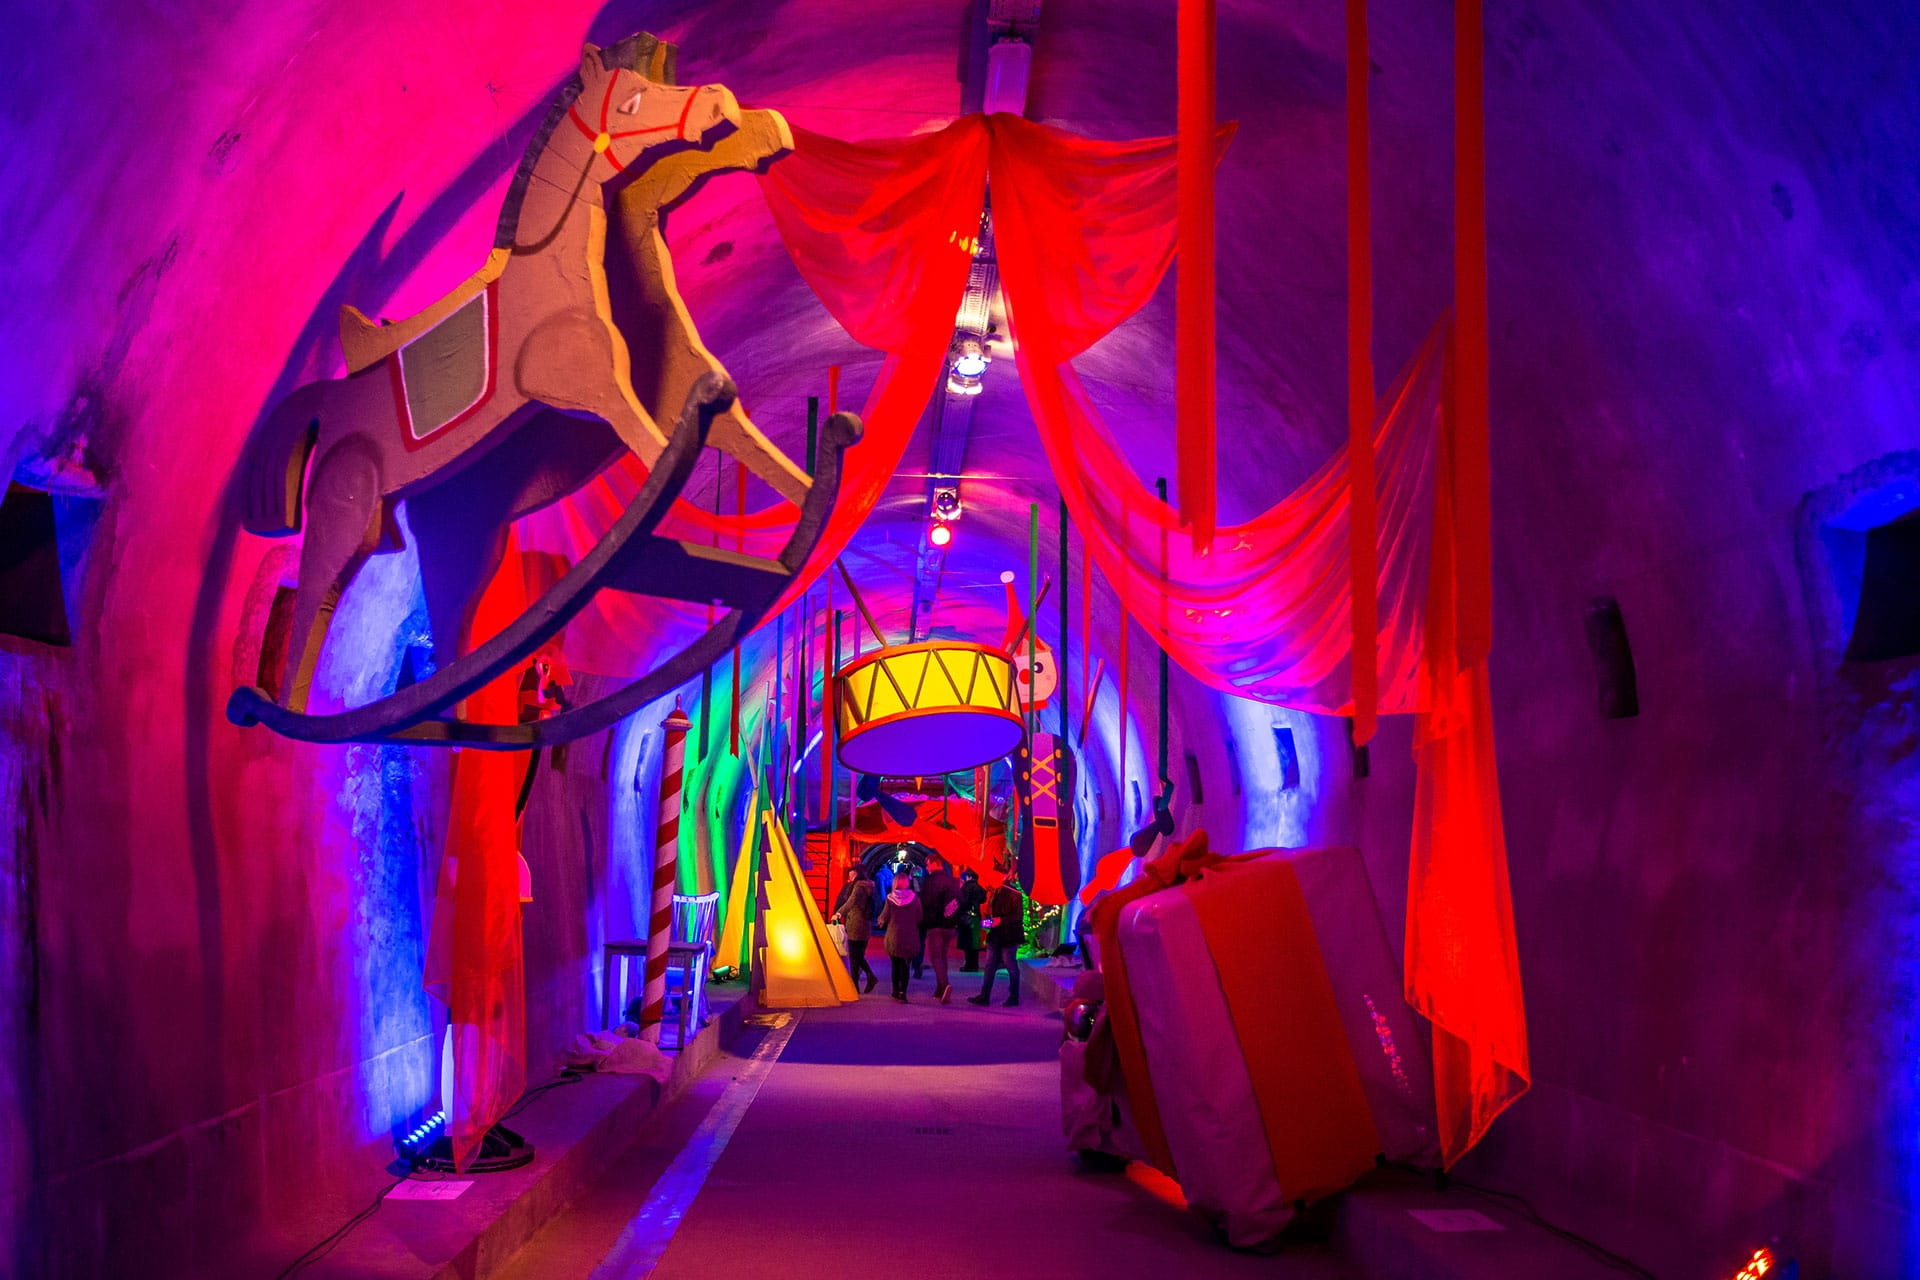 Grič-Tunnel: Hier wird auf magische Weise ein Weihnachtsmärchen erzählt – inklusive Lichtinstallationen, Musik in einer einzigartigen Tunnel-Akustik und Video-Projektionen.